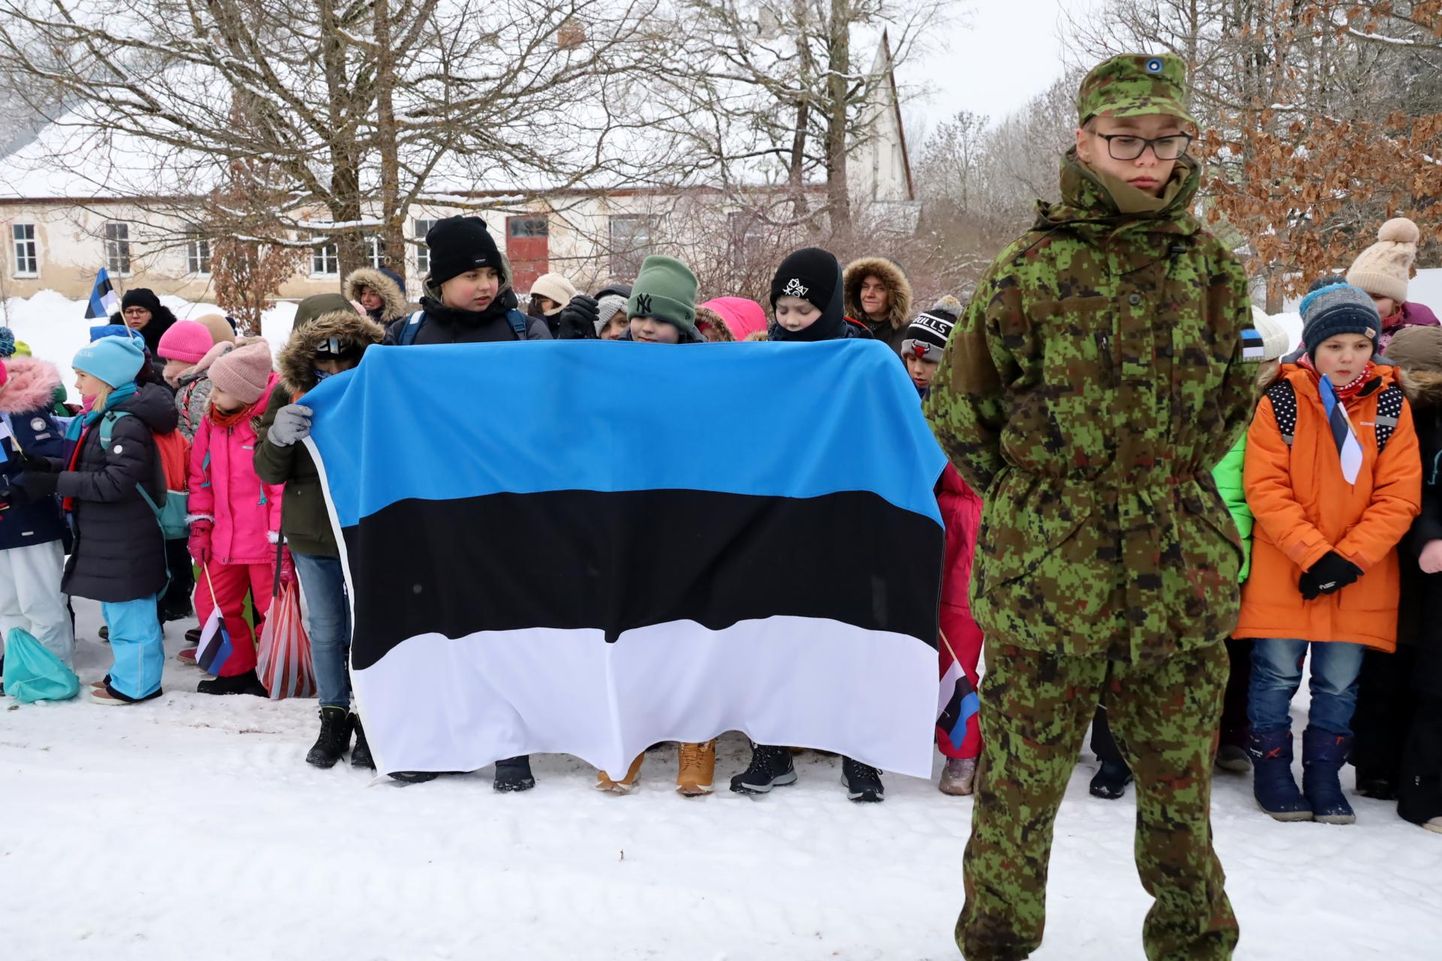 Väike-Maarja gümnaasiumi pere tähistas 23. veebruaril Väike-Maarjas asuva vabadussamba juures Eesti riigi 105. aastapäeva.